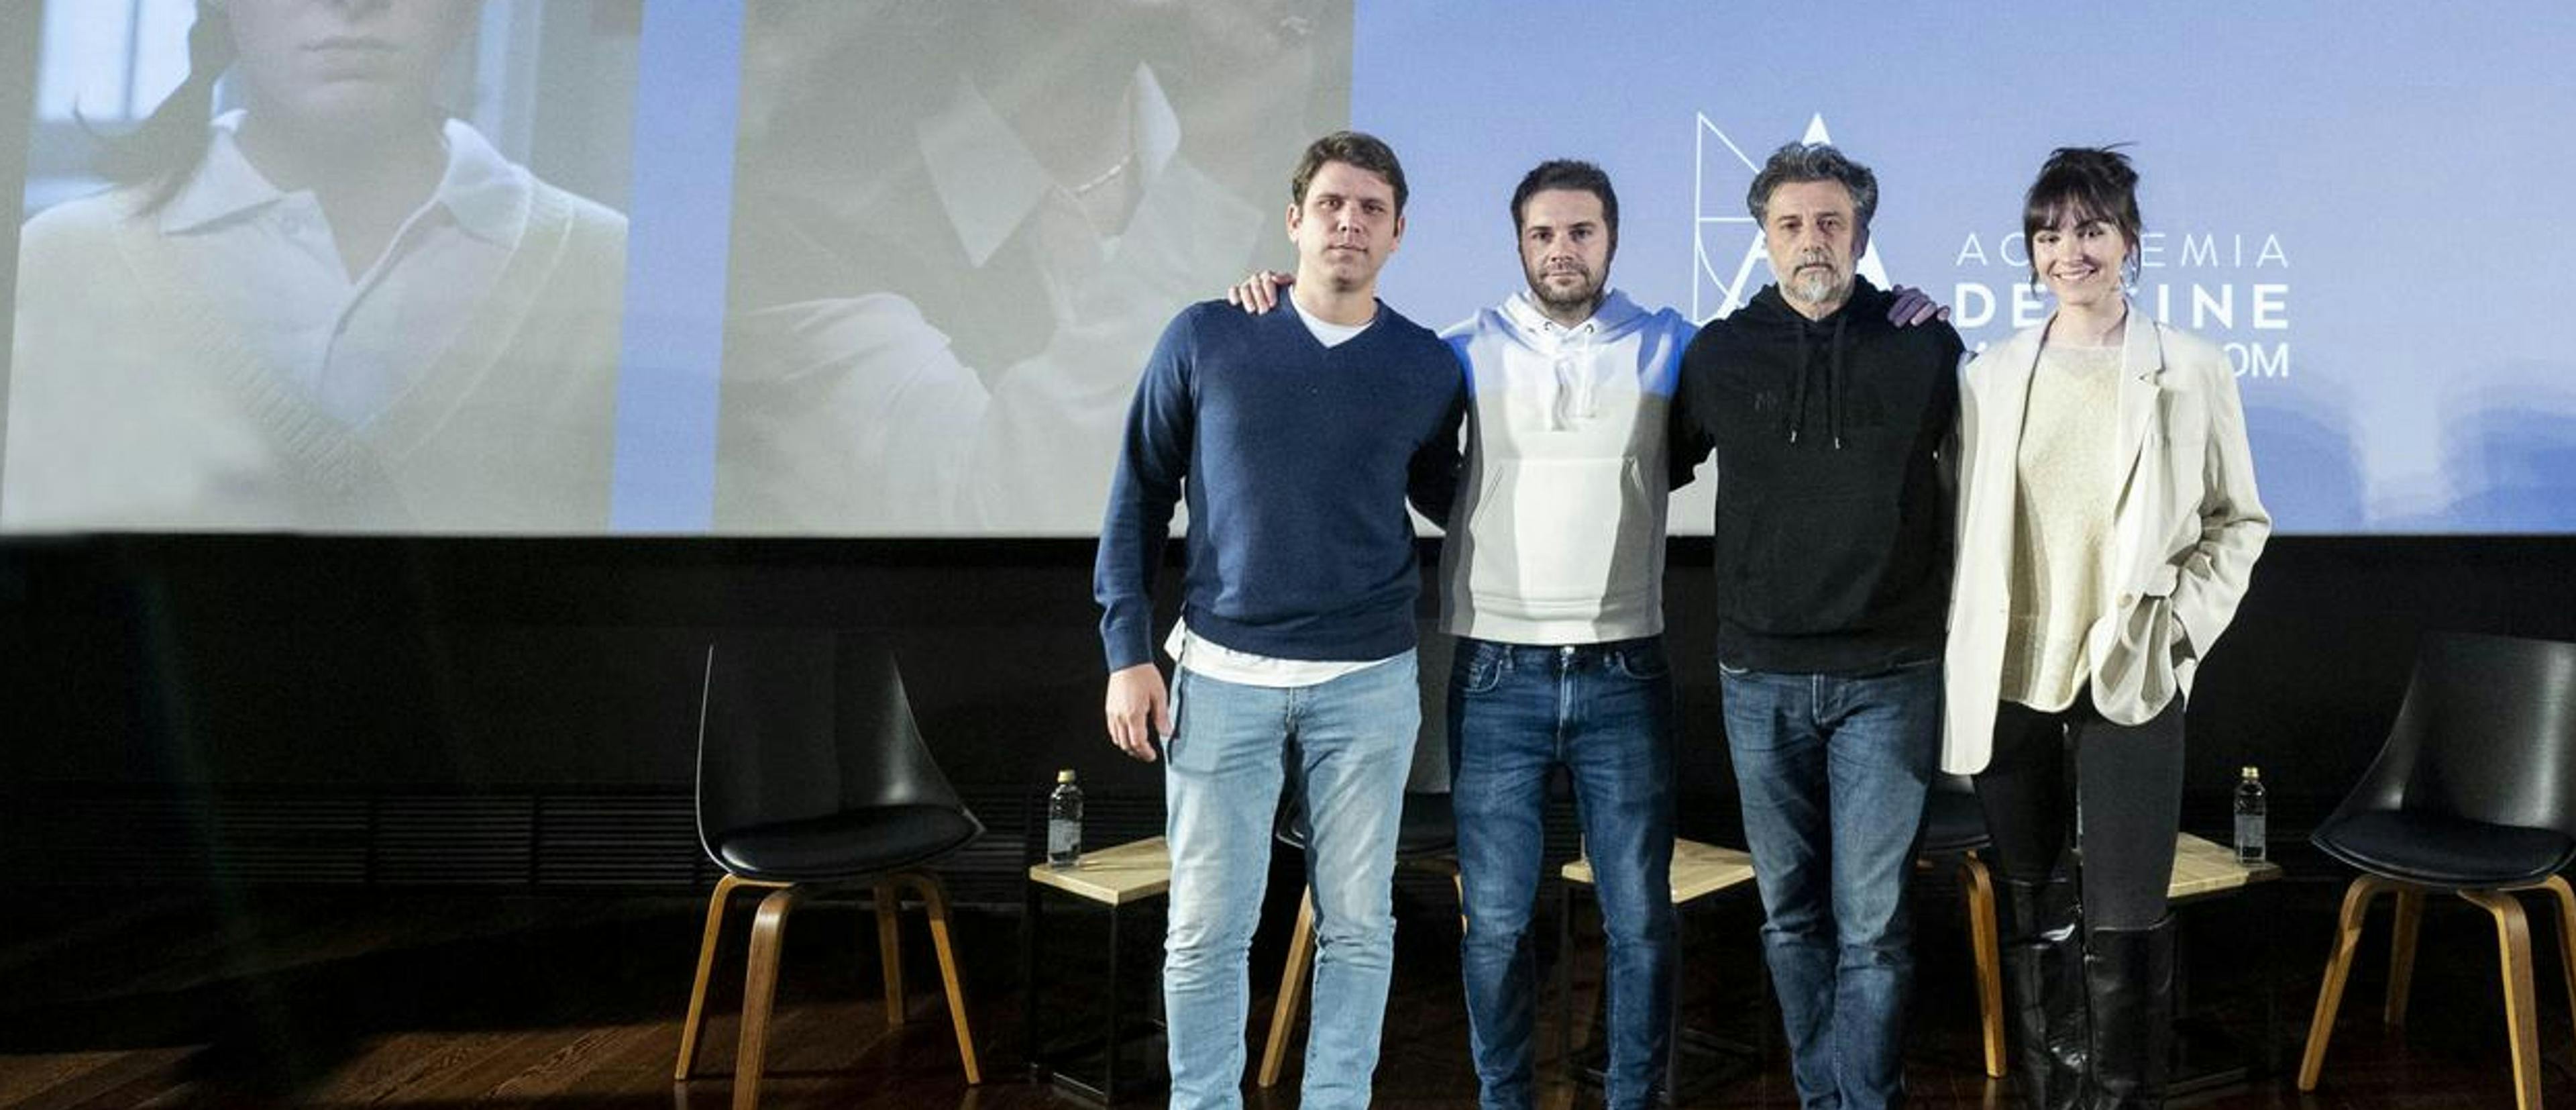 La Academia reúne a los cuatro cortometrajistas españoles que siguen en la carrera por el Oscar